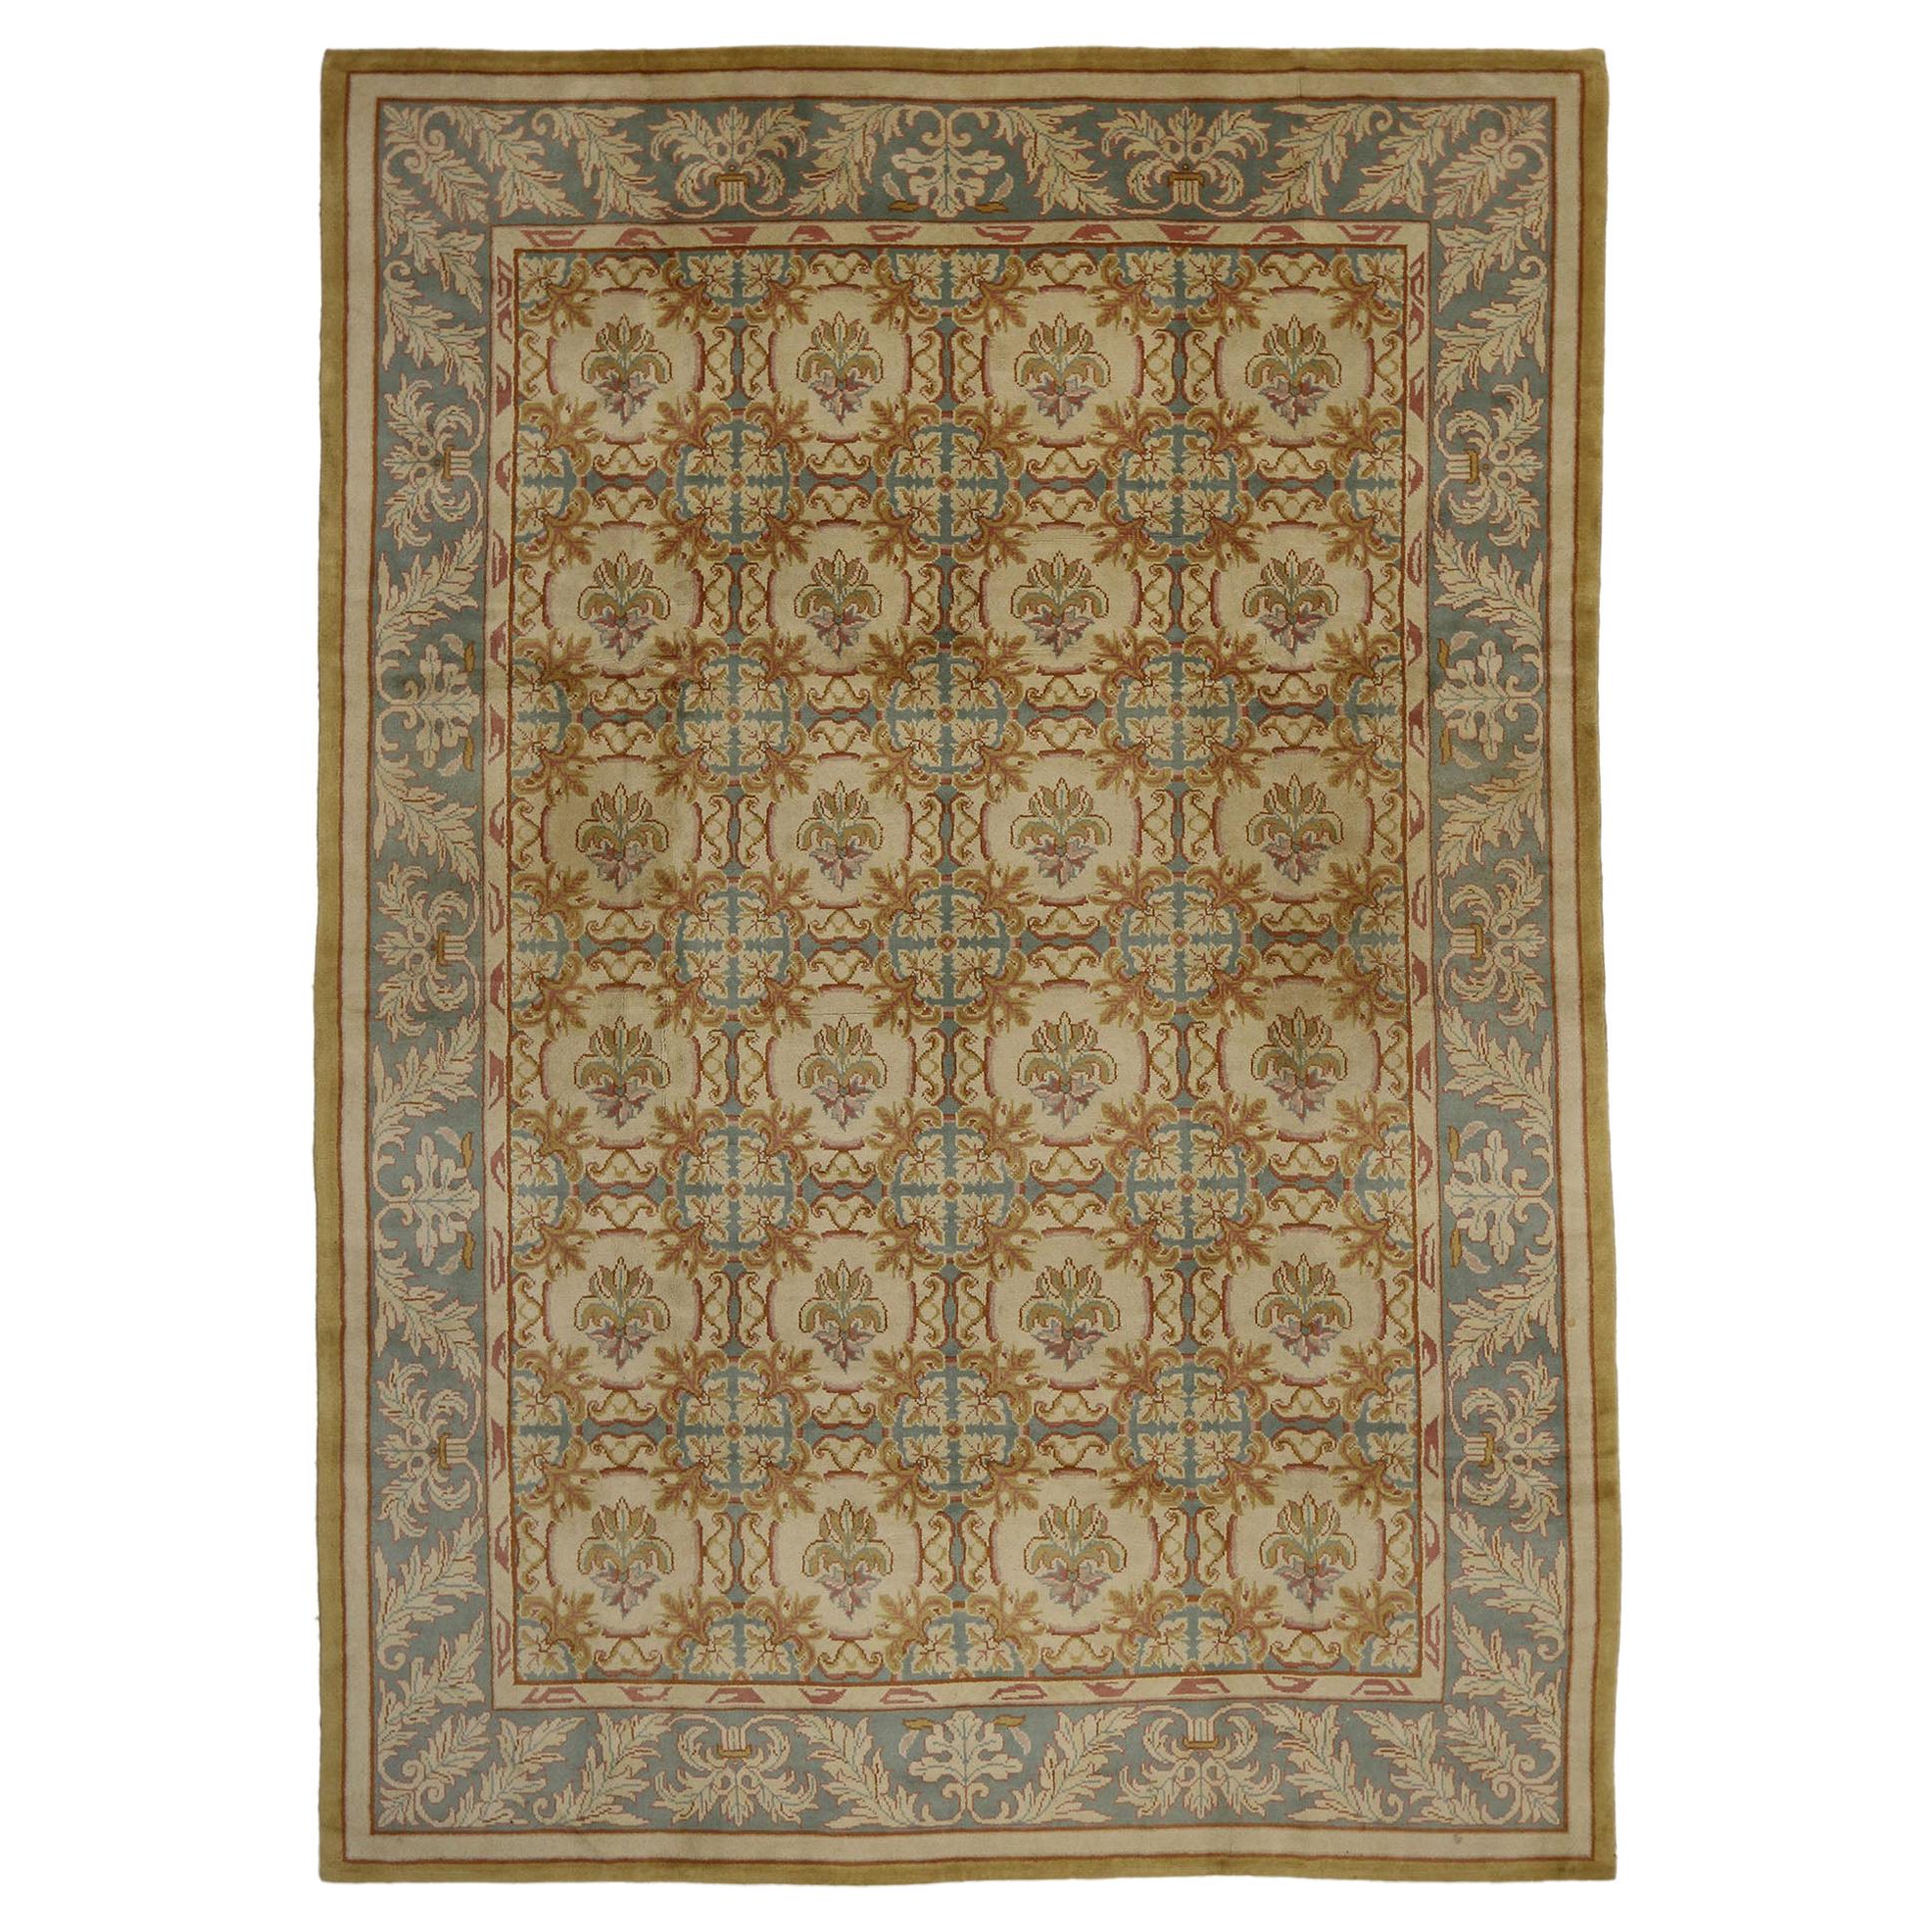 Türkischer Oushak-Teppich im neoklassischen europäischen Stil und in weichen Farben